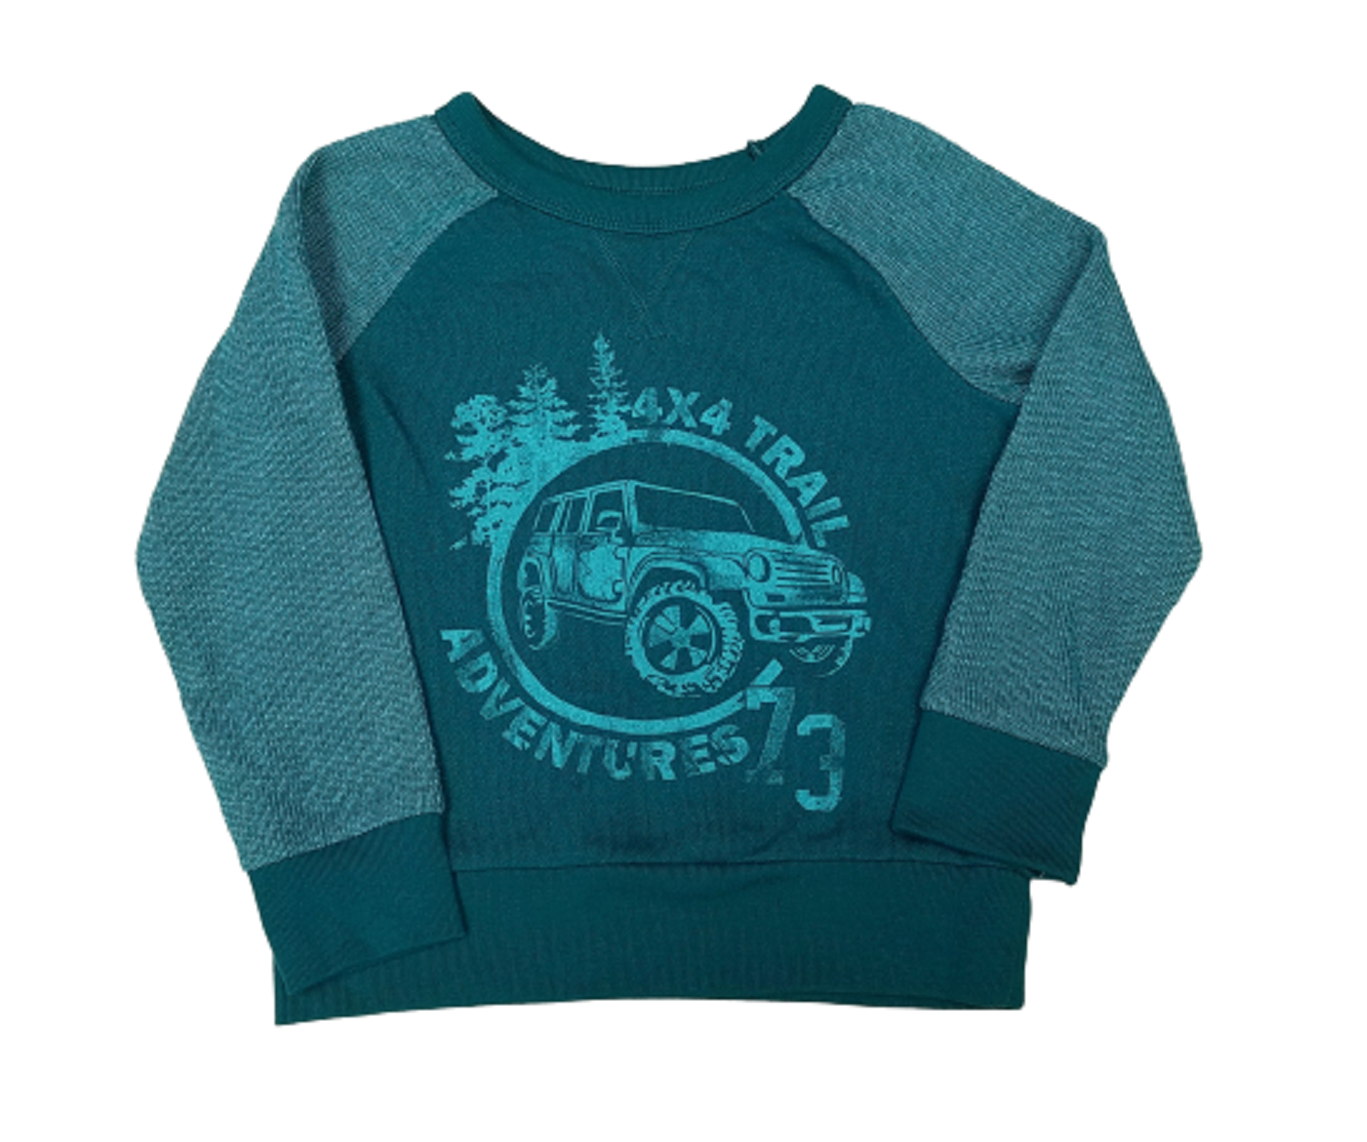 Cherokee 4x4 Trail Adventures 73 Sweatshirt Size 18 Months